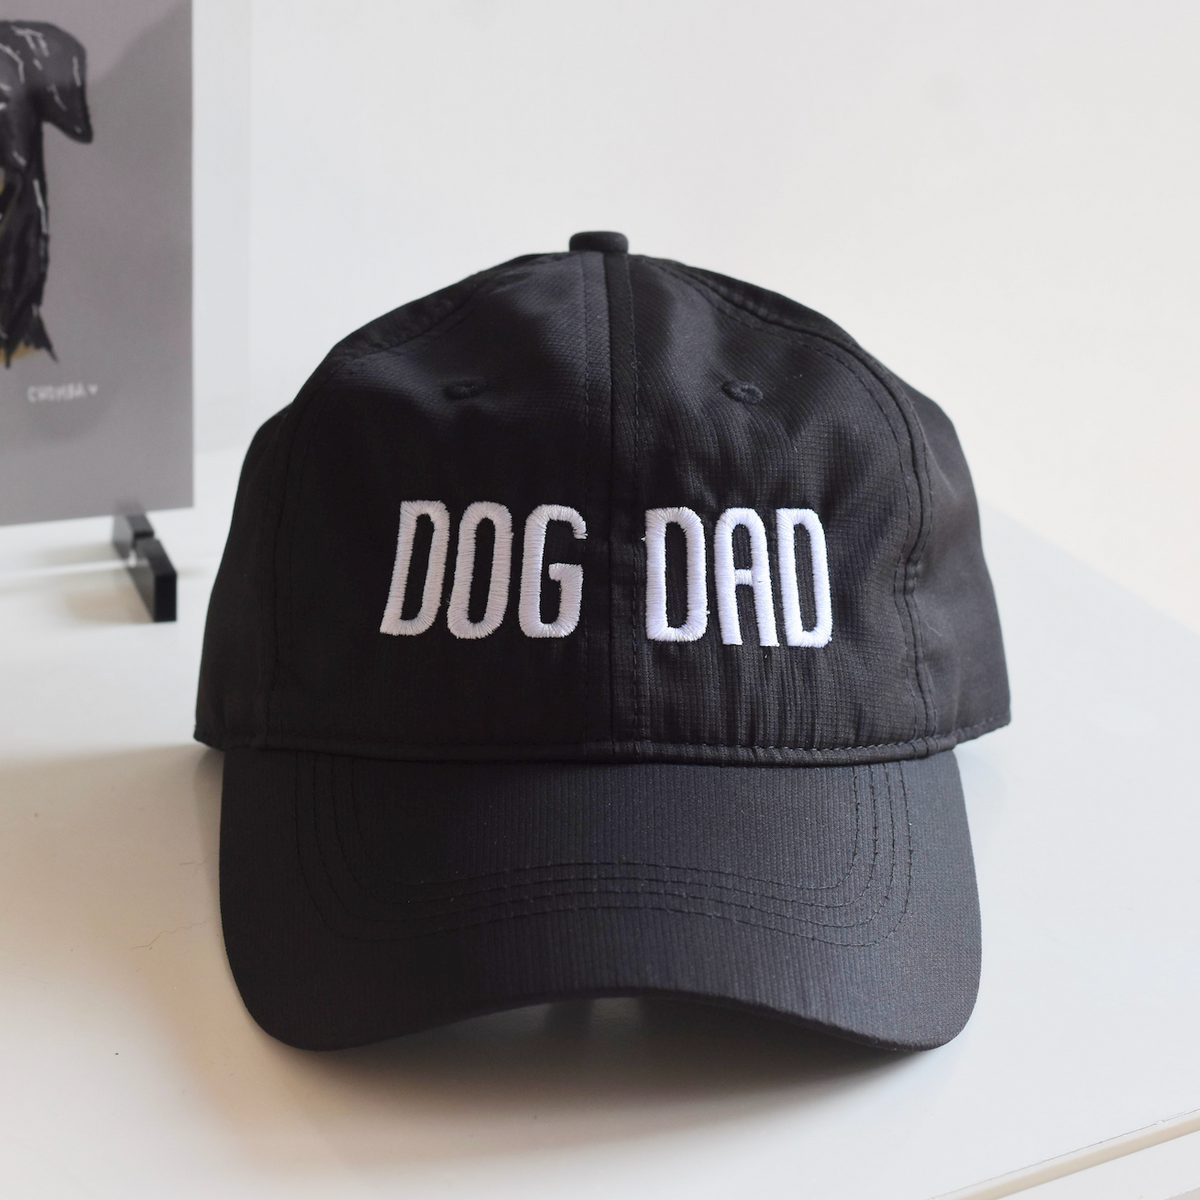 DOG DAD - gorra